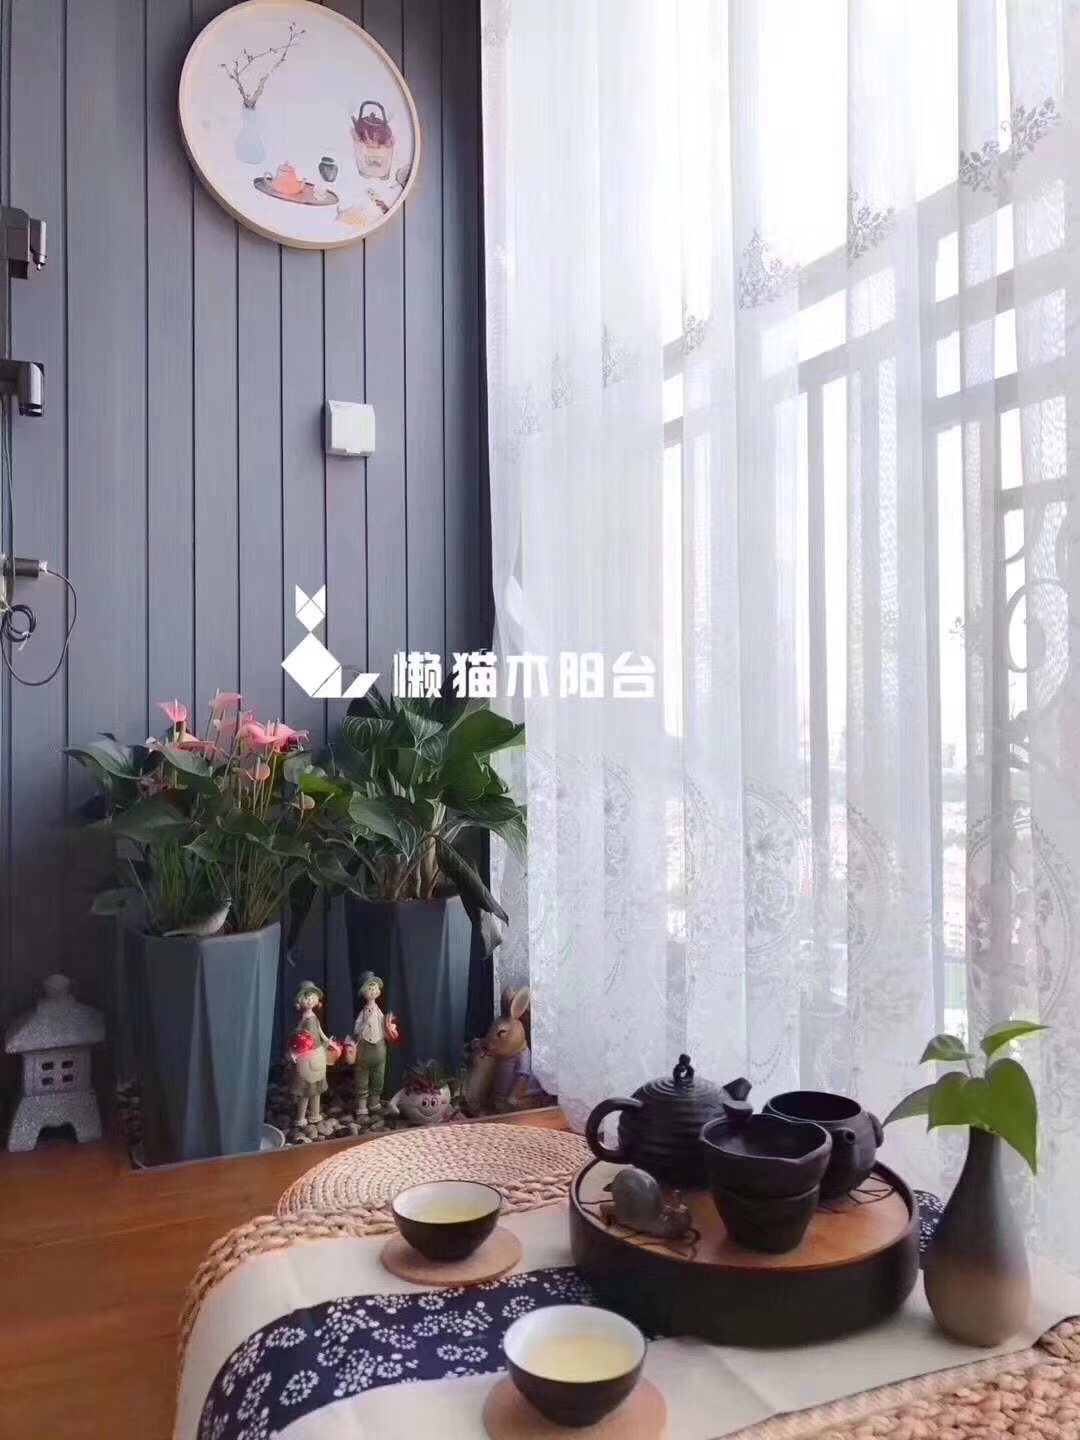 深圳懒猫木阳台 | 美貌且实用 - 懒猫木阳台